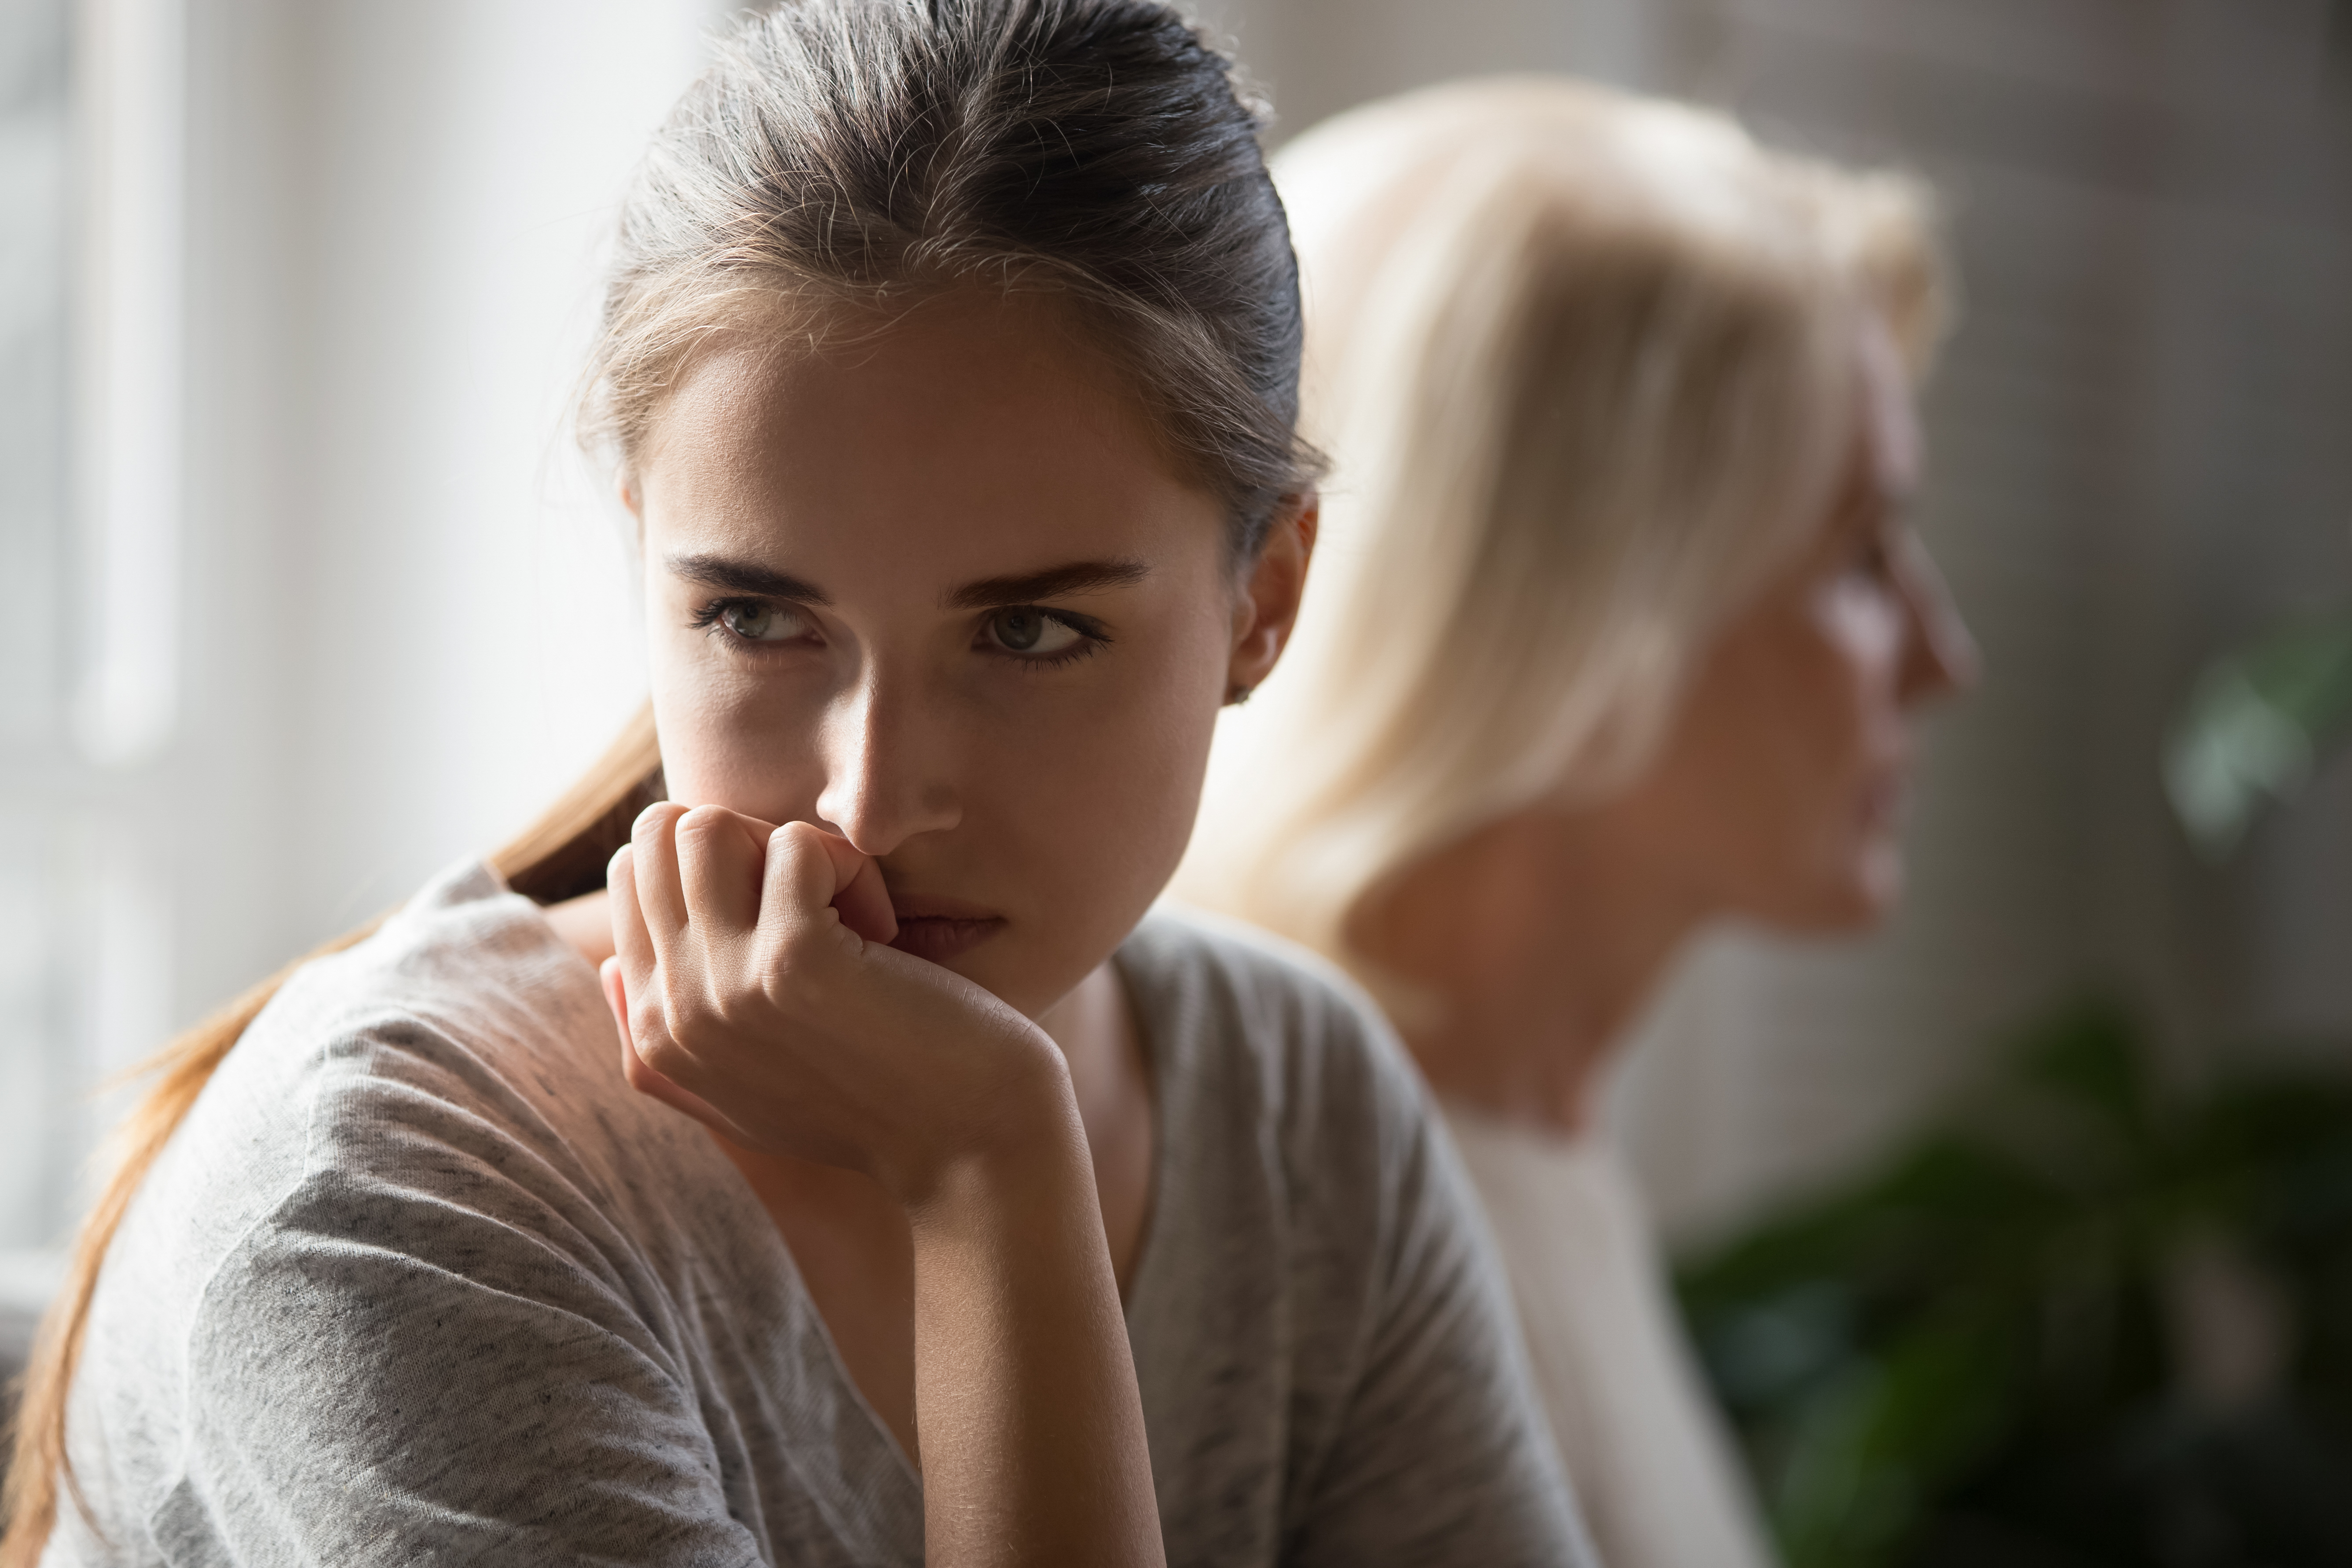 Une fille en colère et une mère s'ignorent après une dispute | Source : Shutterstock